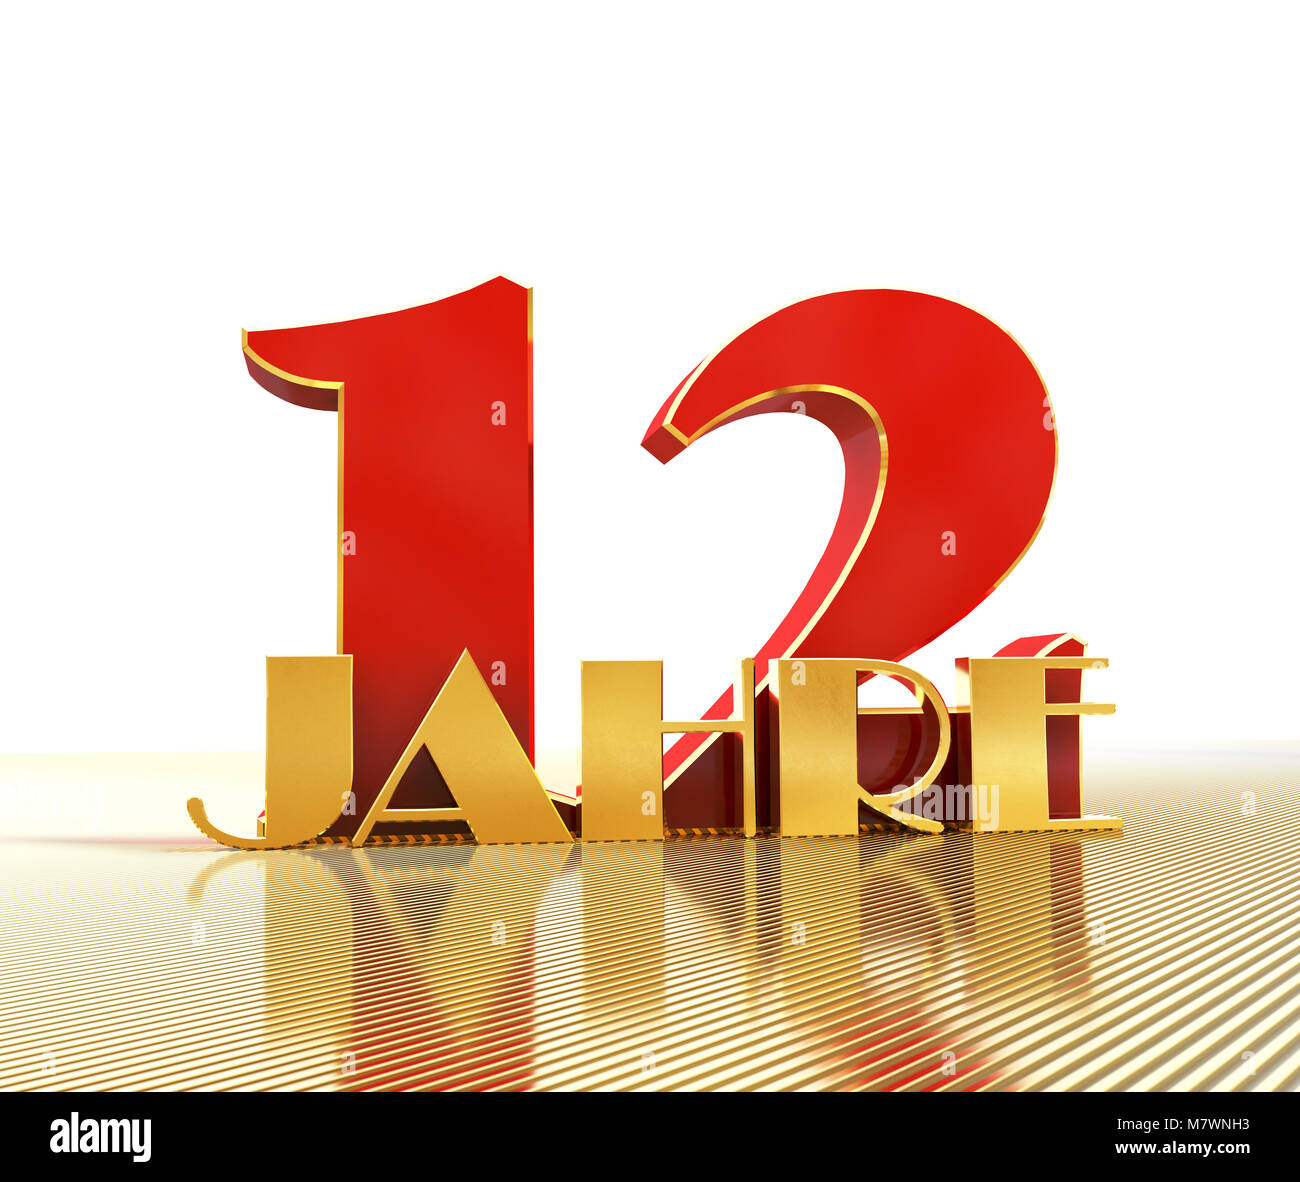 Golden numero dodici (numero 12) e la parola "anni" contro lo sfondo della prospettiva di linee d'oro. Traduzione dal tedesco - anni. 3D illus Foto Stock